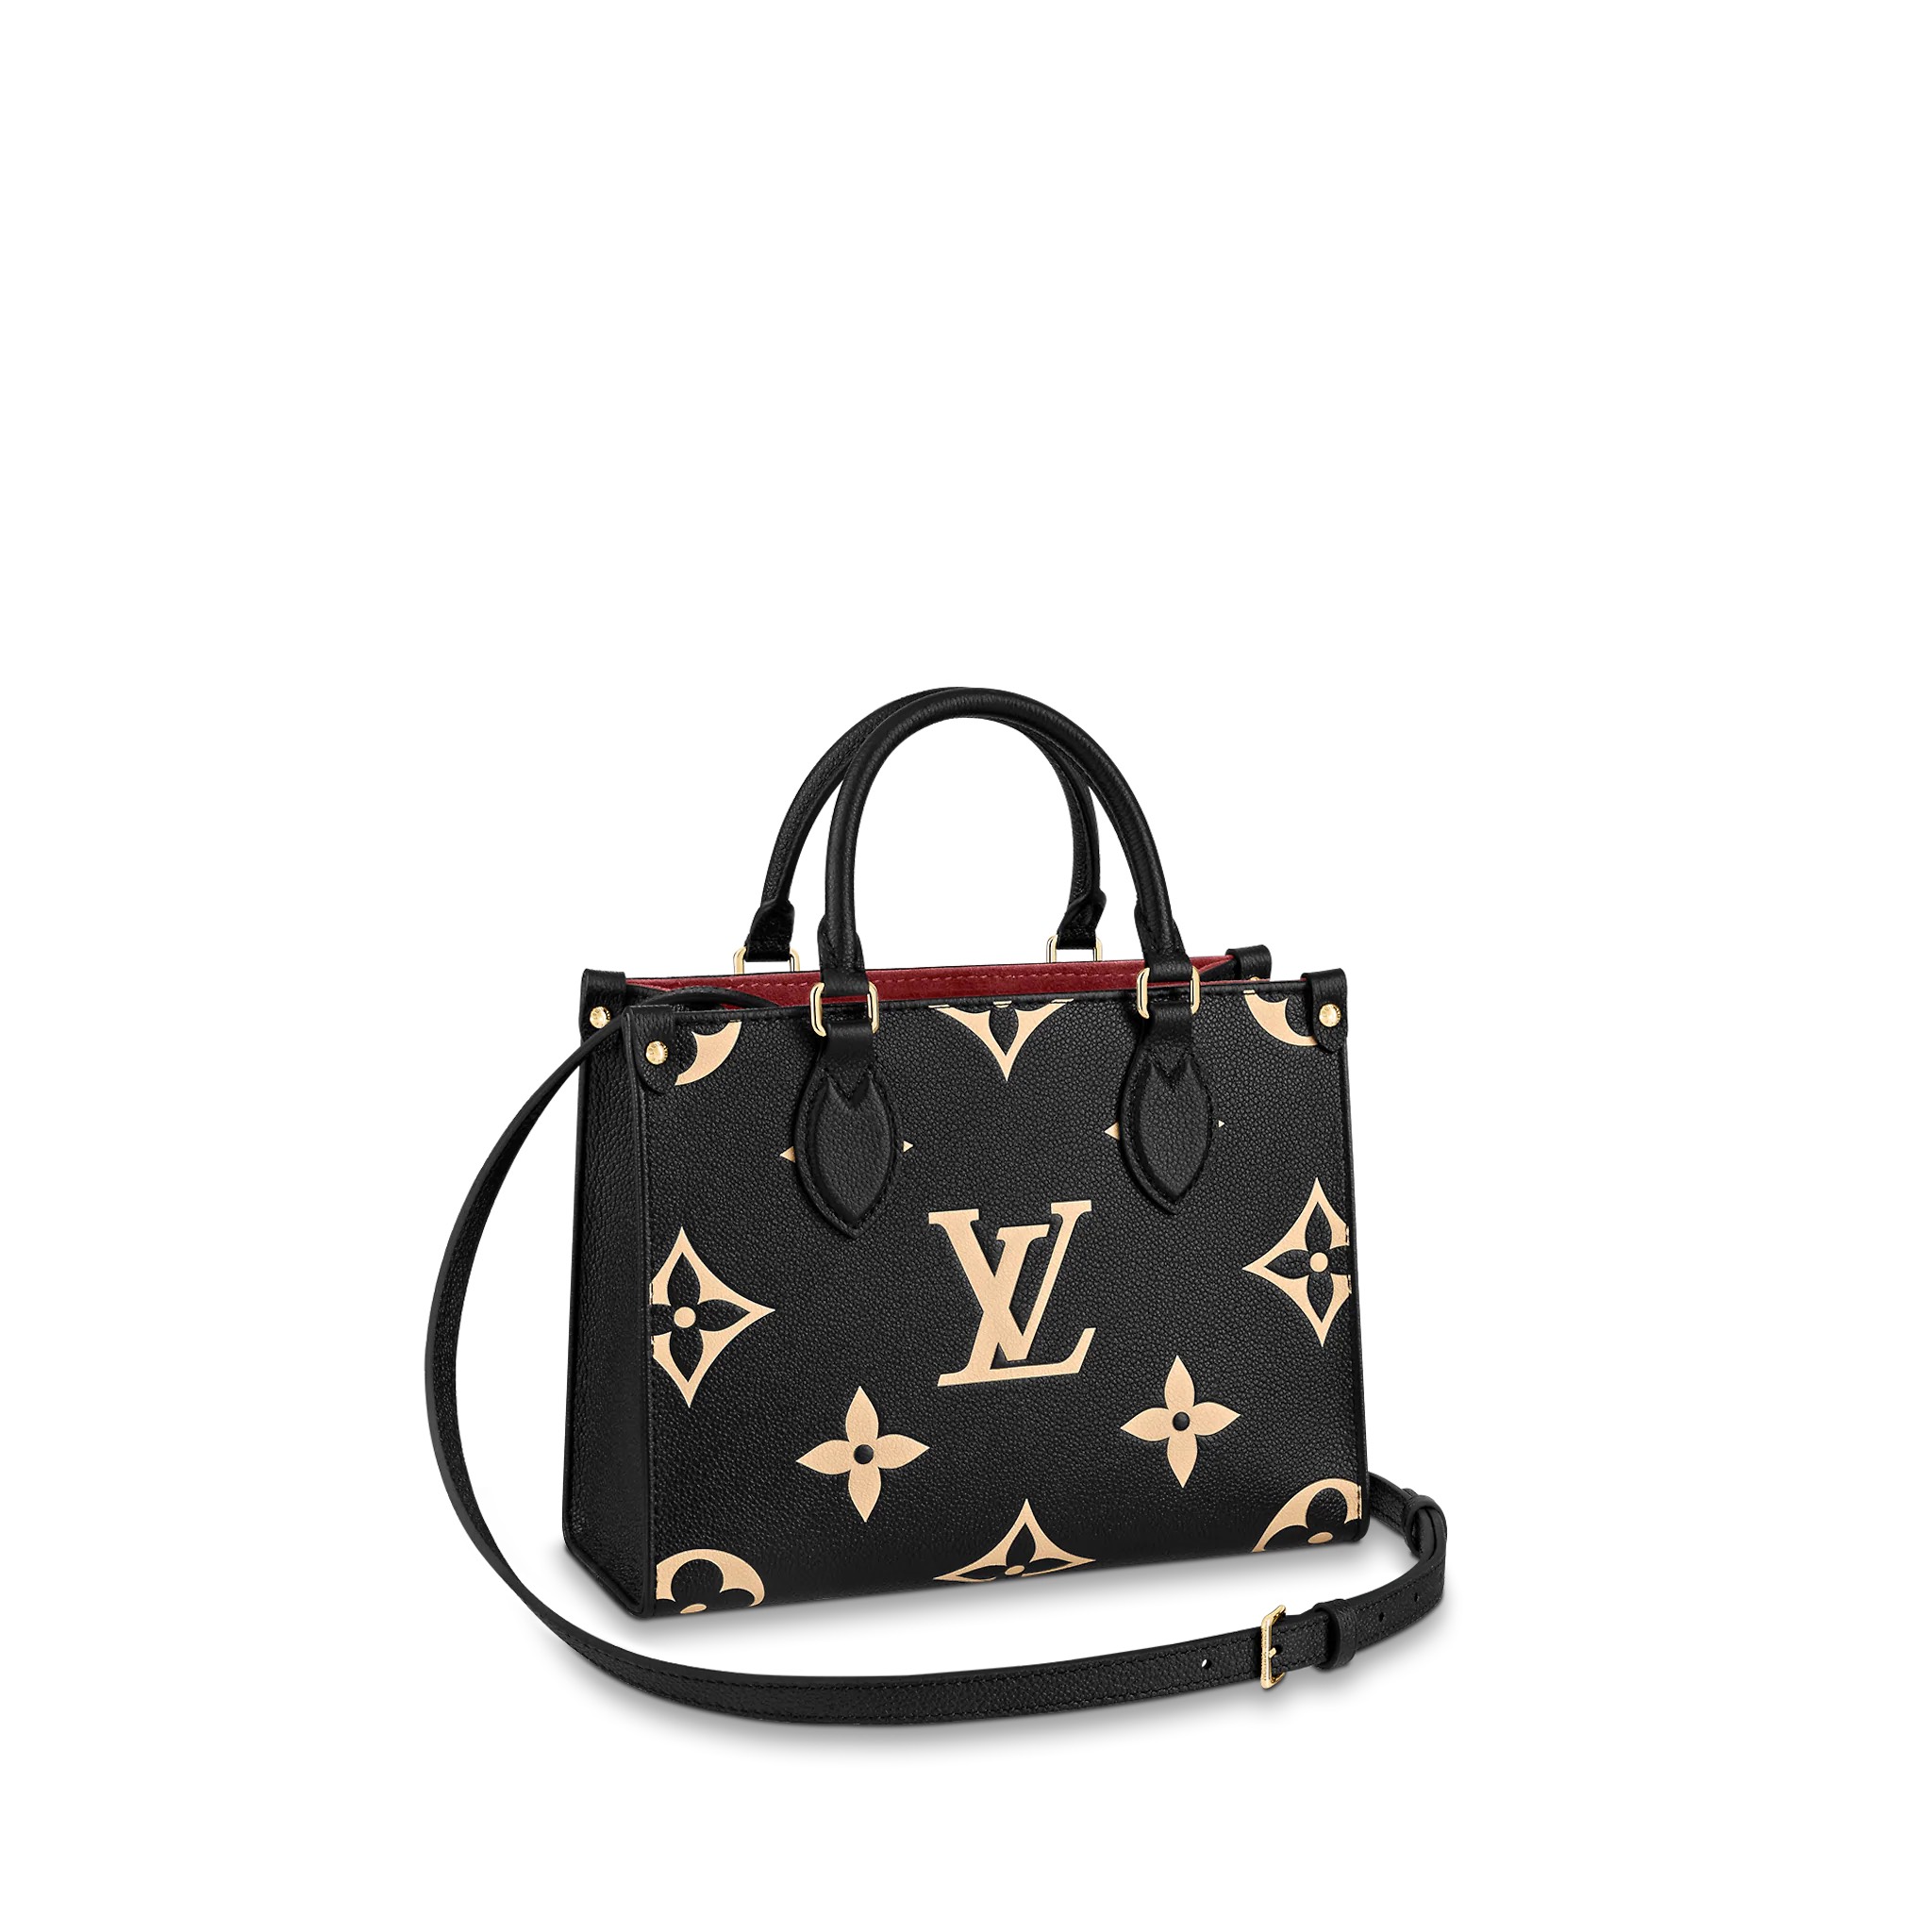 Loạt túi mang họa tiết đặc trưng của Louis Vuitton lên kệ Joolux   VnExpress Giải trí